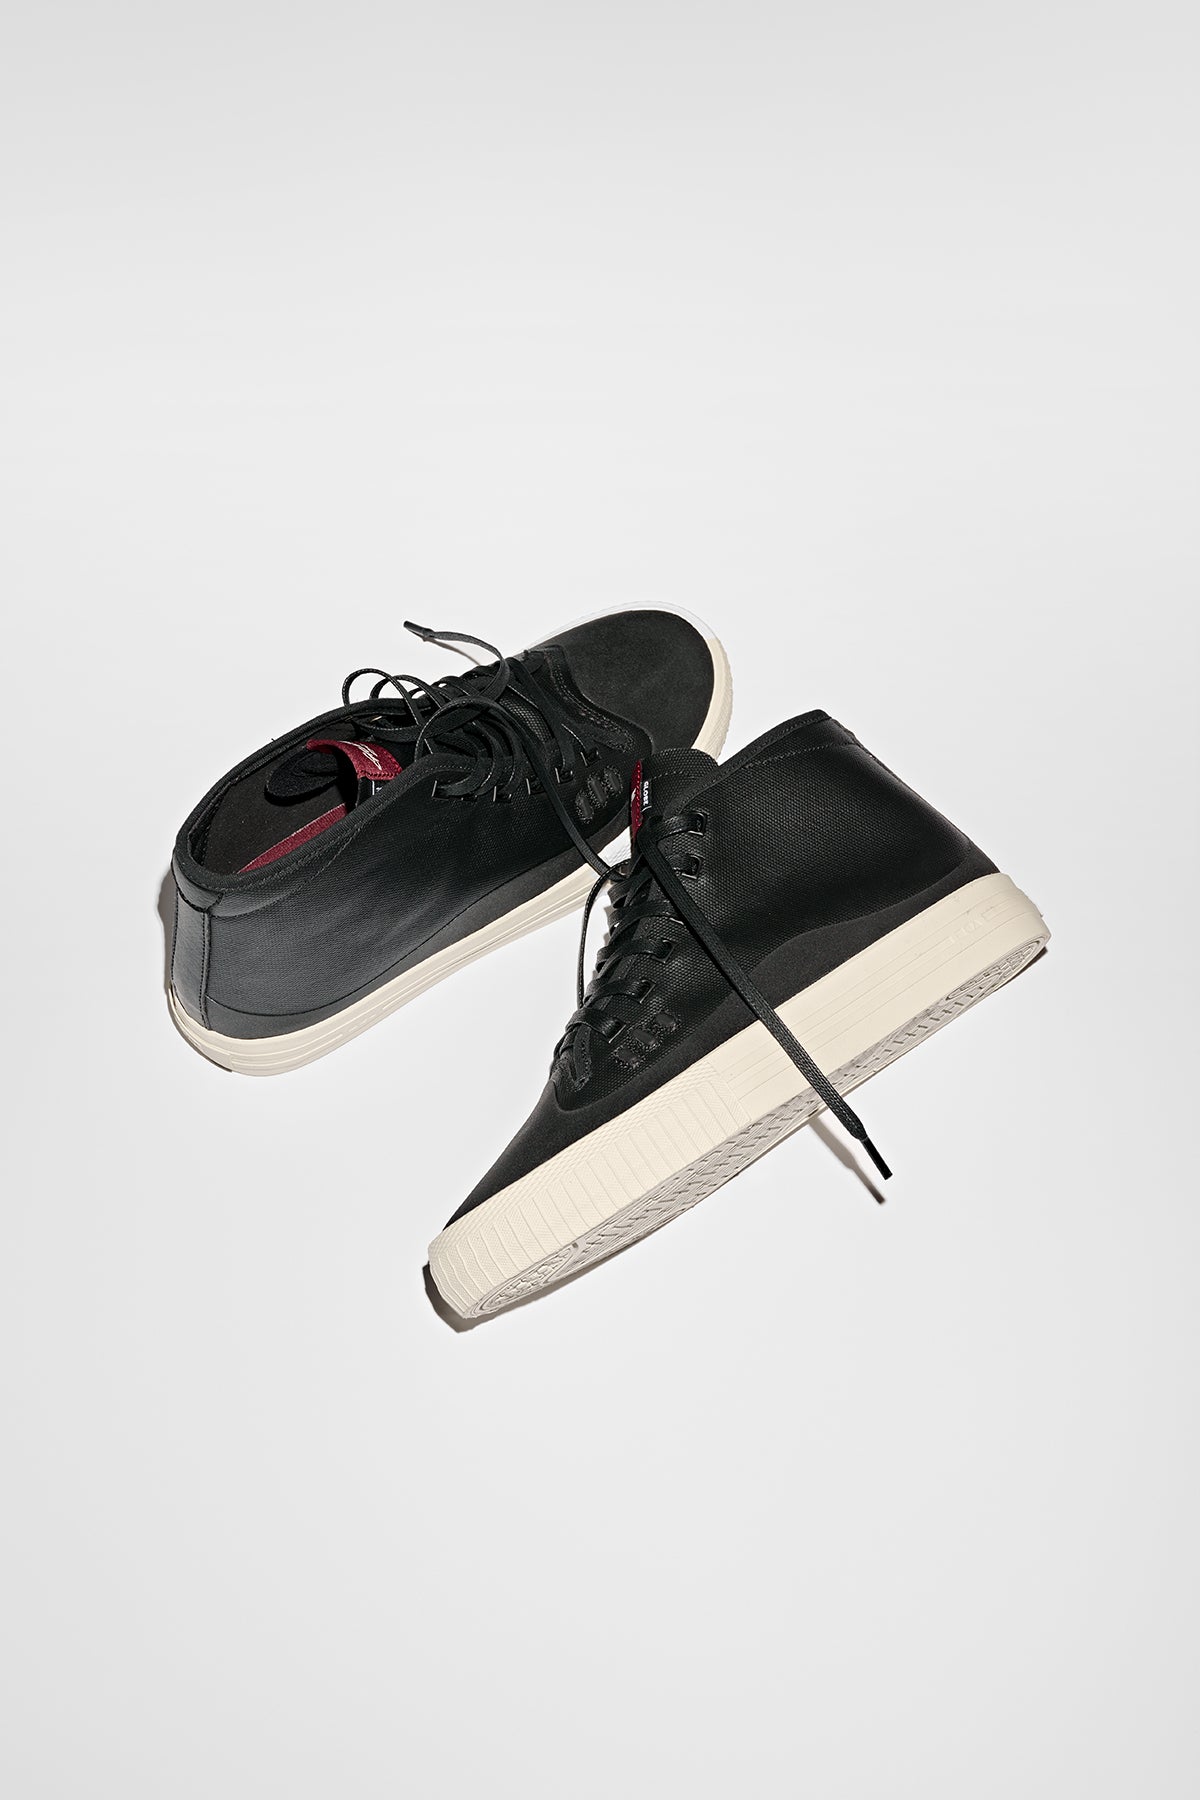 Globe - Gillette Mid - Black/Cream - Skate Shoes